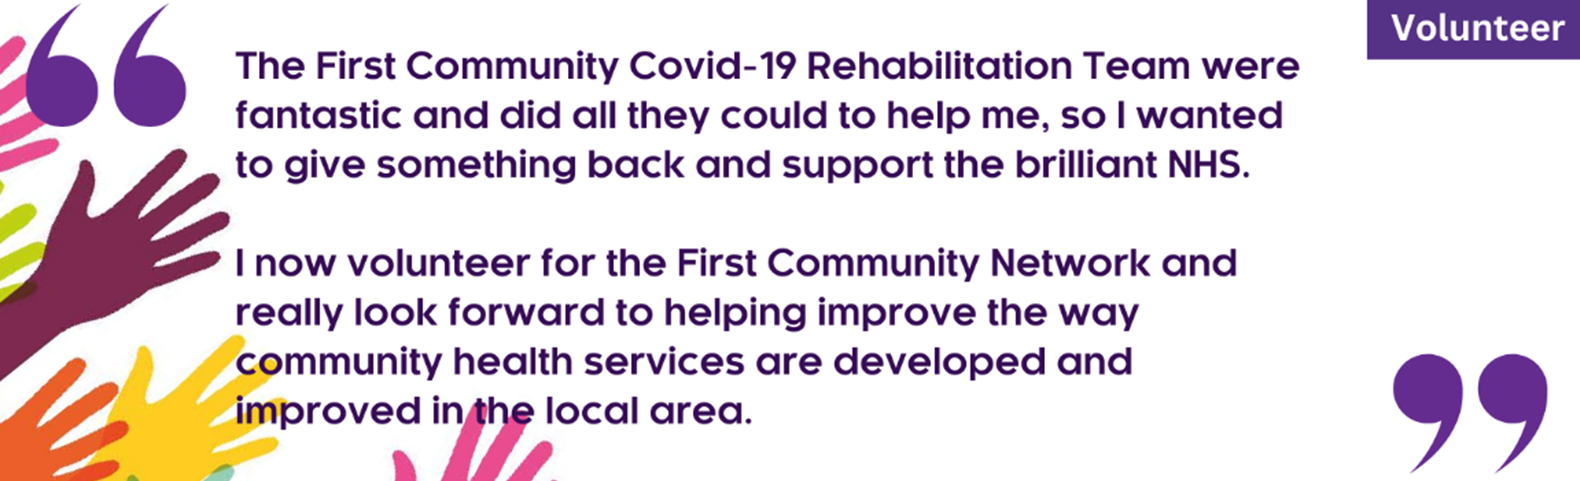 First Community Network volunteer feedback